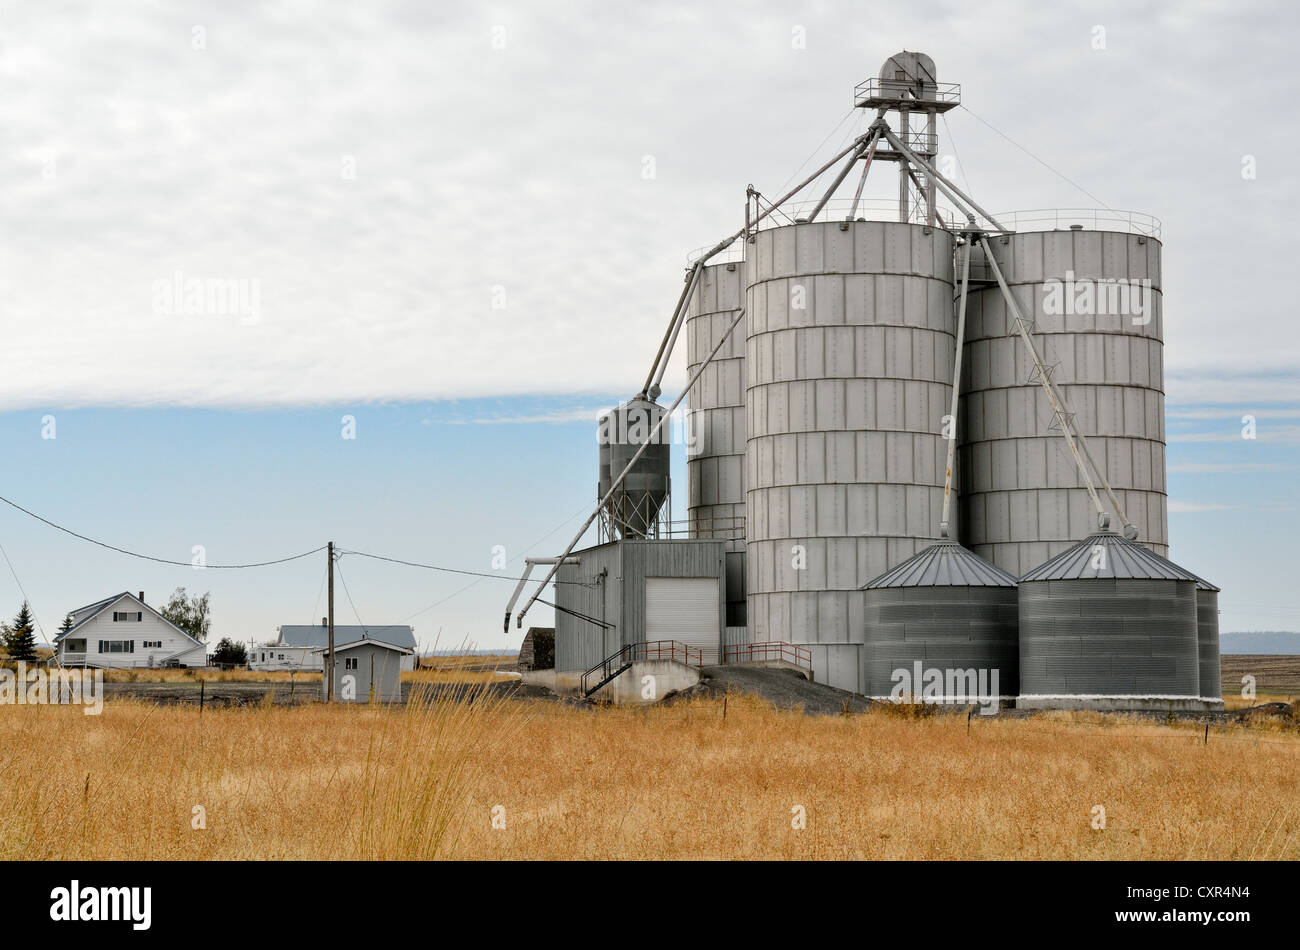 Les silos à grains, Anatone, Autoroute 129, Washington, USA Banque D'Images